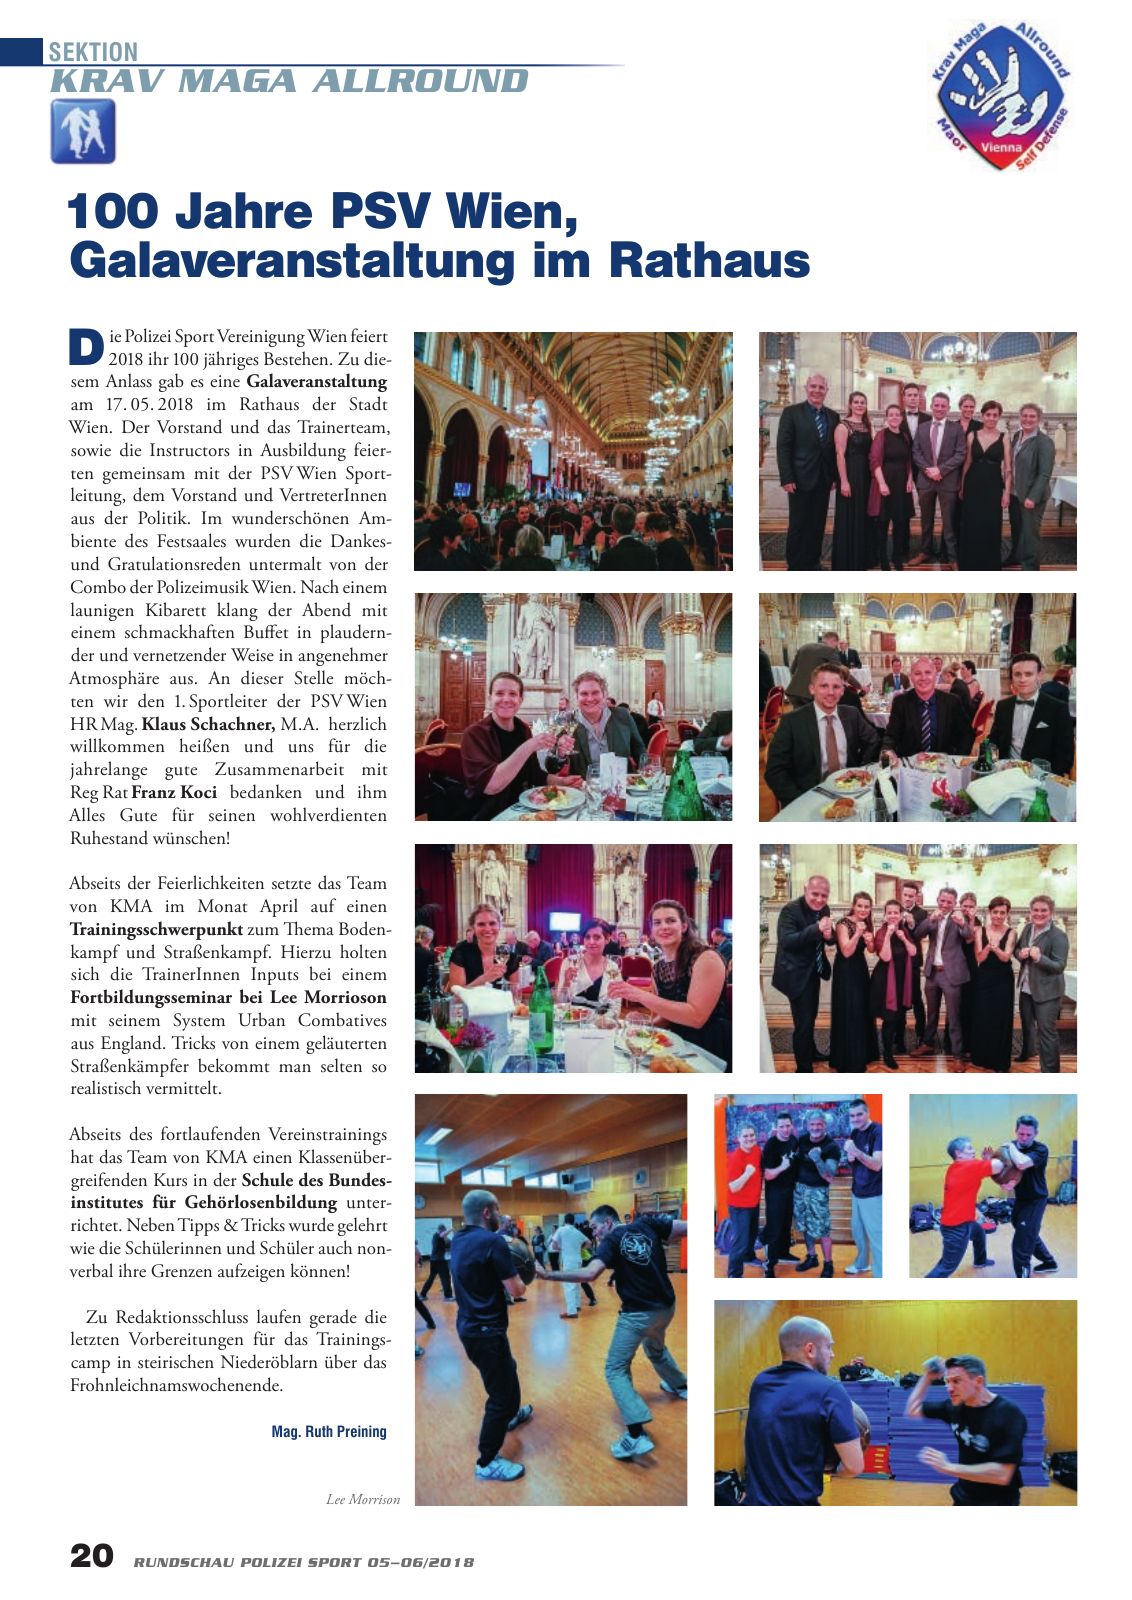 Vorschau Rundschau Polizei Sport 05-06/2018 Seite 20